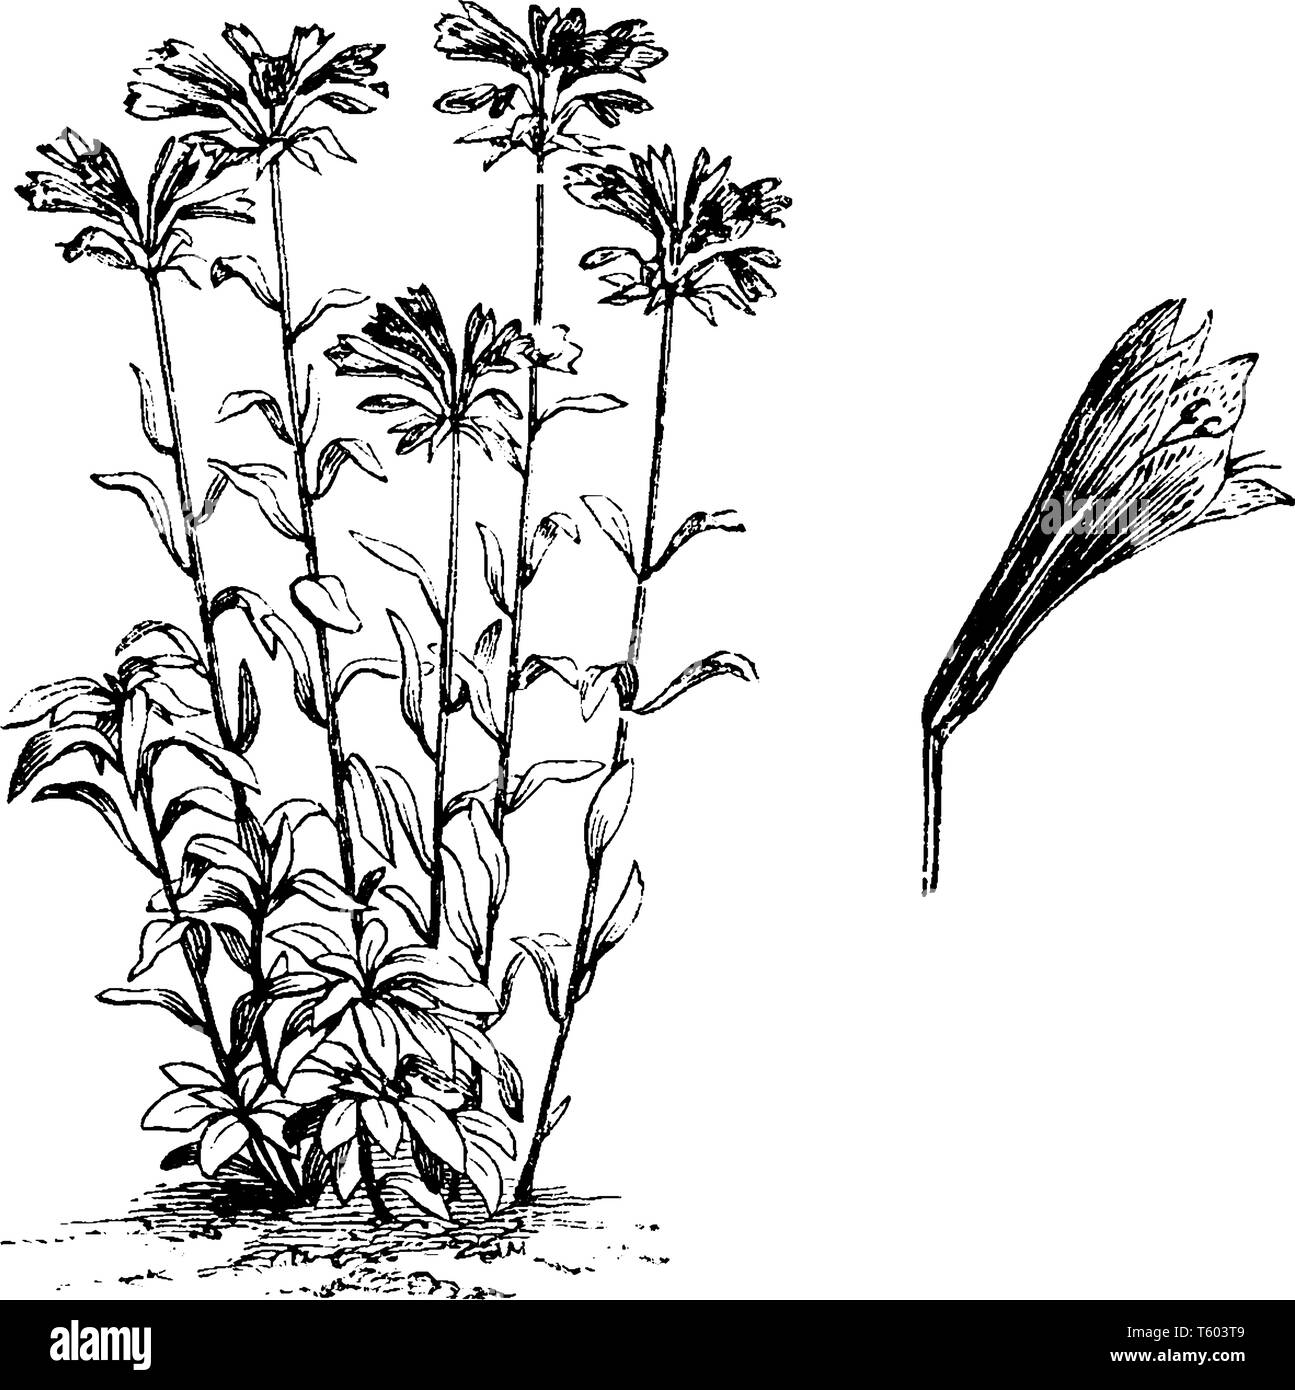 Ein Bild zeigt Alstromeria Aurantiaca Pflanze. Blätter sind kleine, ebene - Kanten, und der Schaft ist groß mit verstreuten Blätter. Die Blüten sind Dunkelrot tipp Stock Vektor